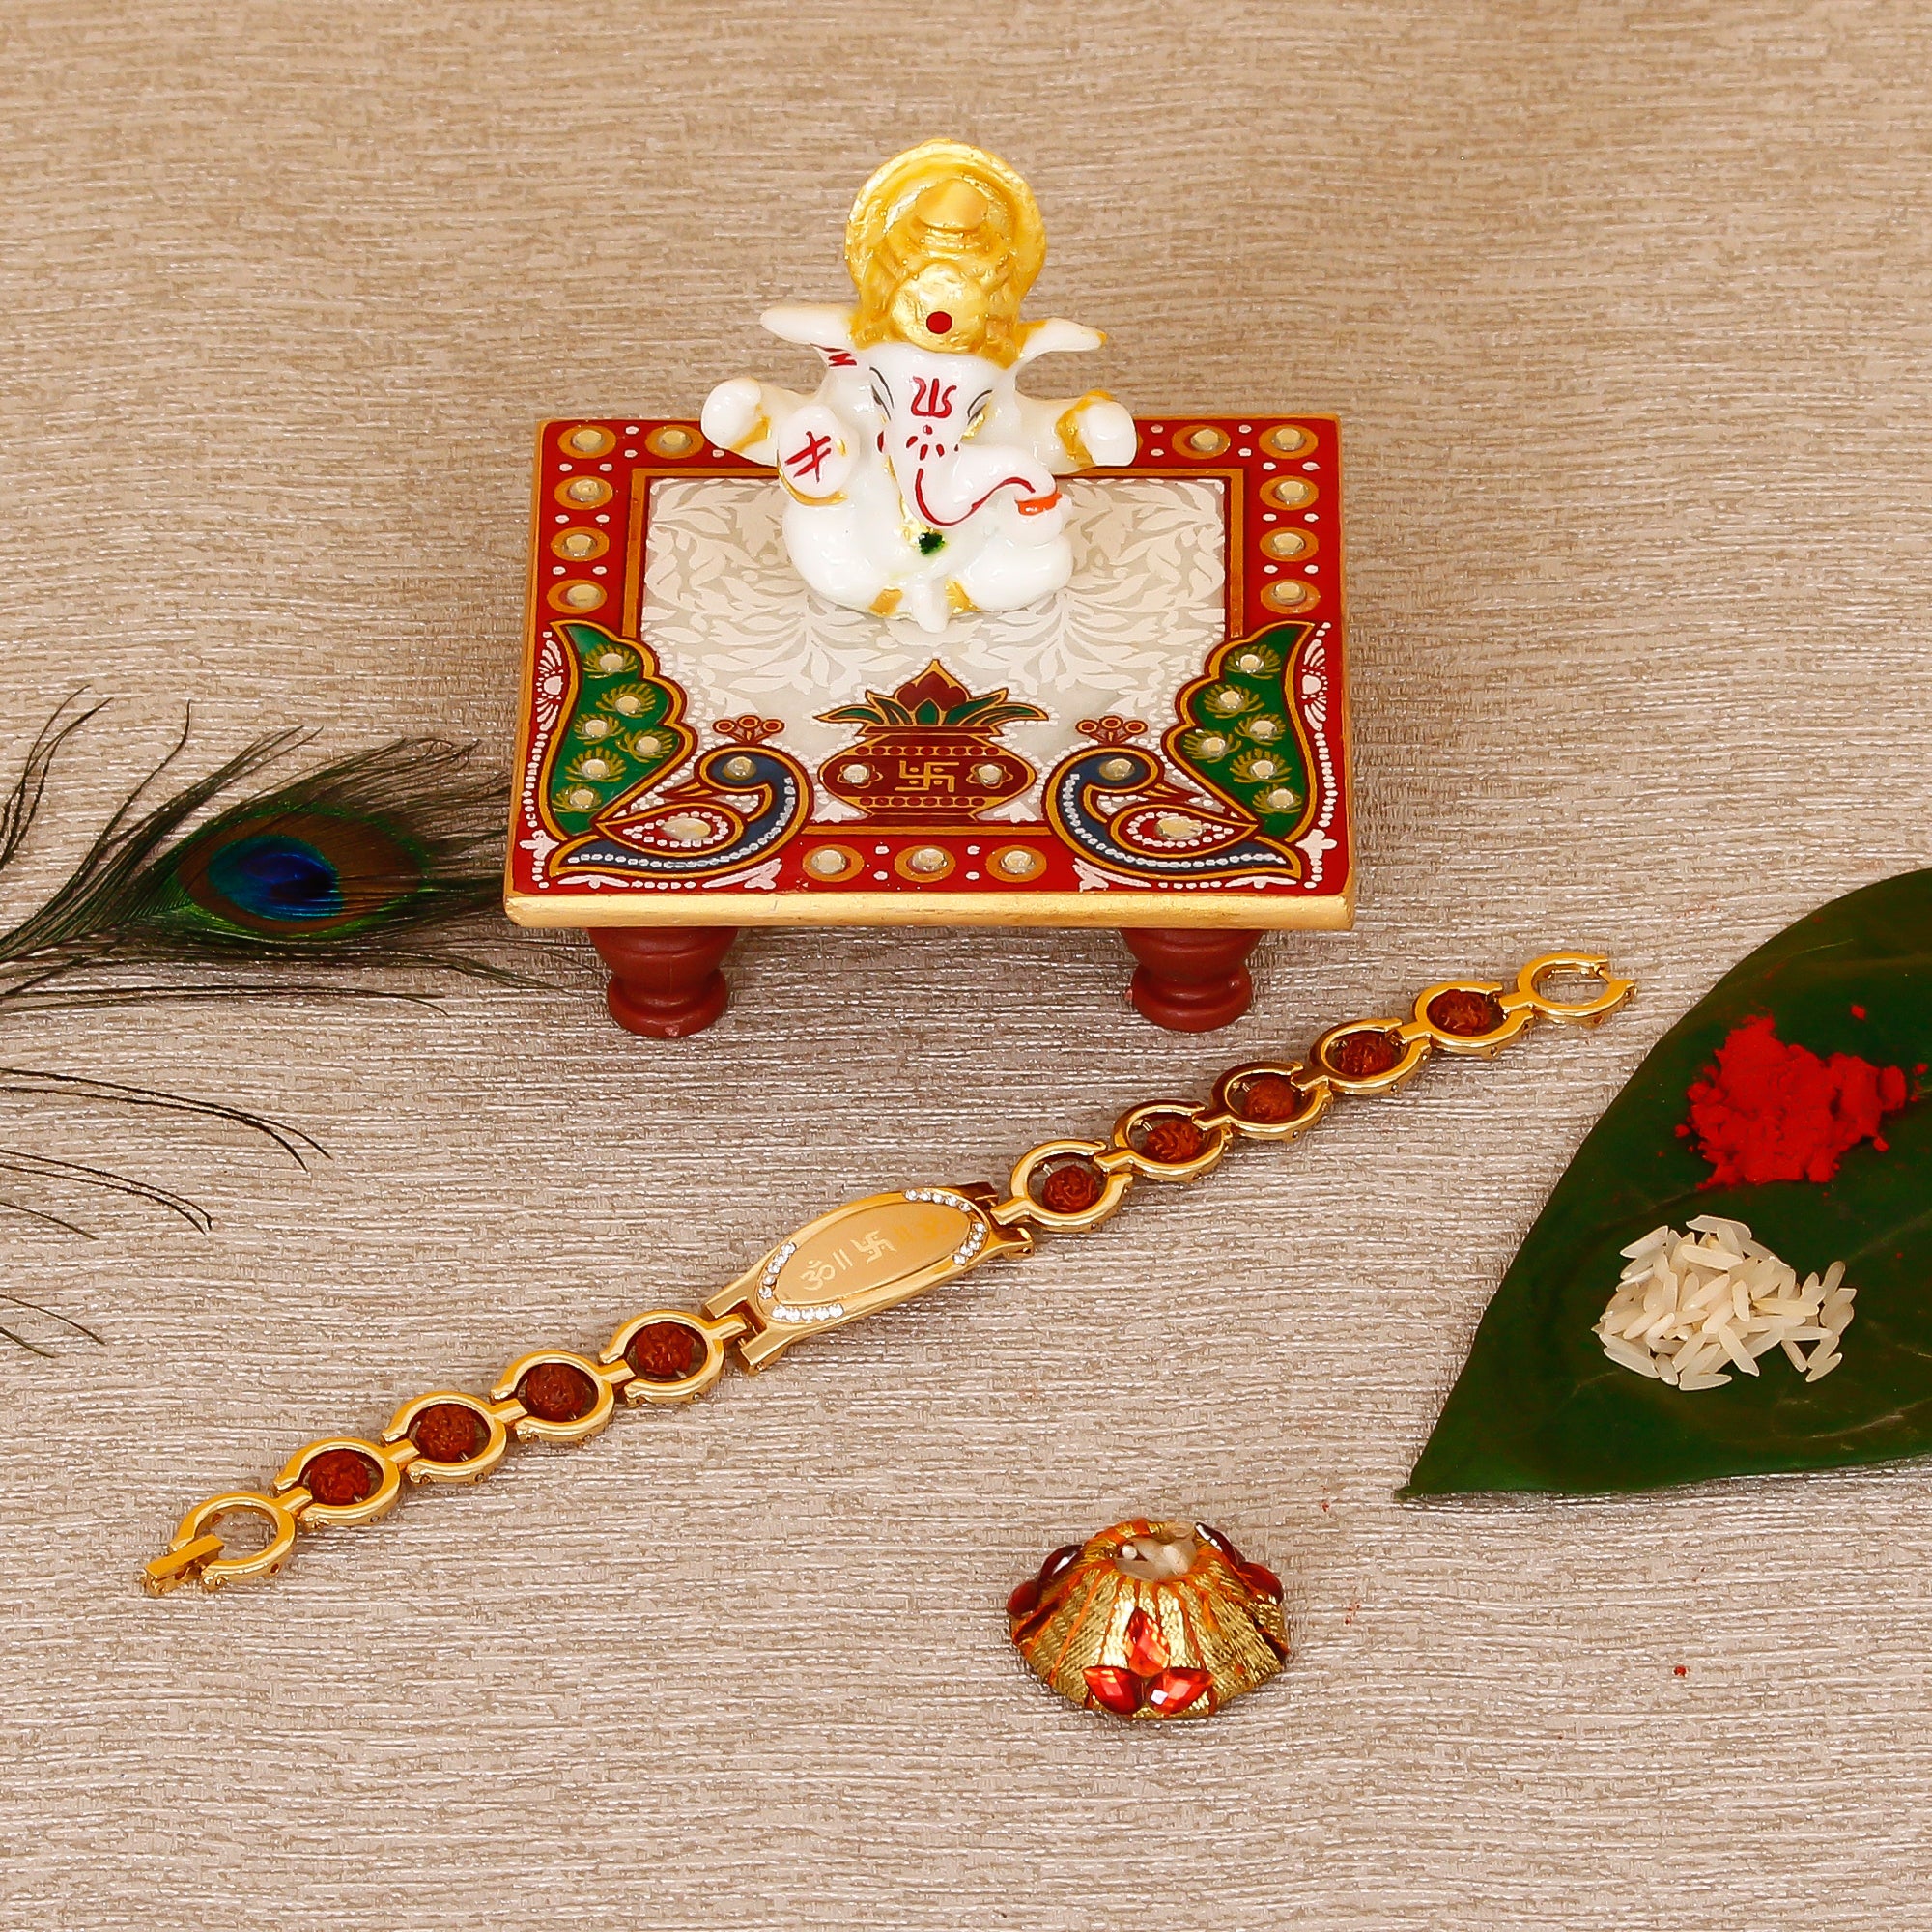 Designer Bracelet Religious Rakhi with Lord Ganesha Marble Chowki and Roli Tikka Matki